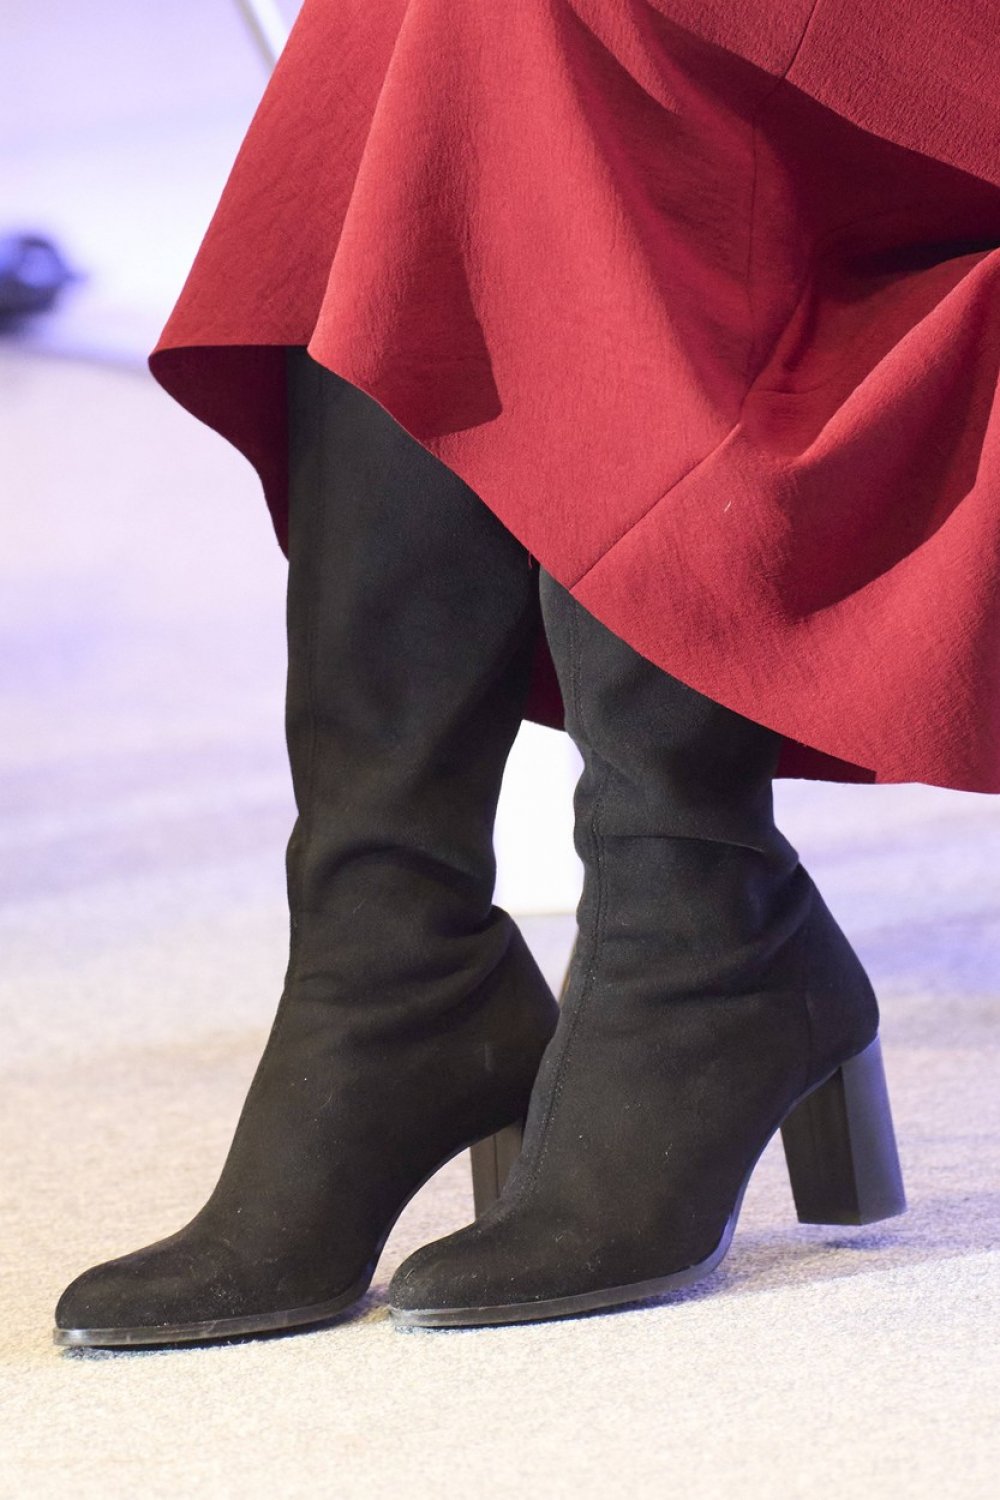 Crne čizme s razlogom su omiljene, a kraljica Letizia nosi jedan od najudobnijih modela